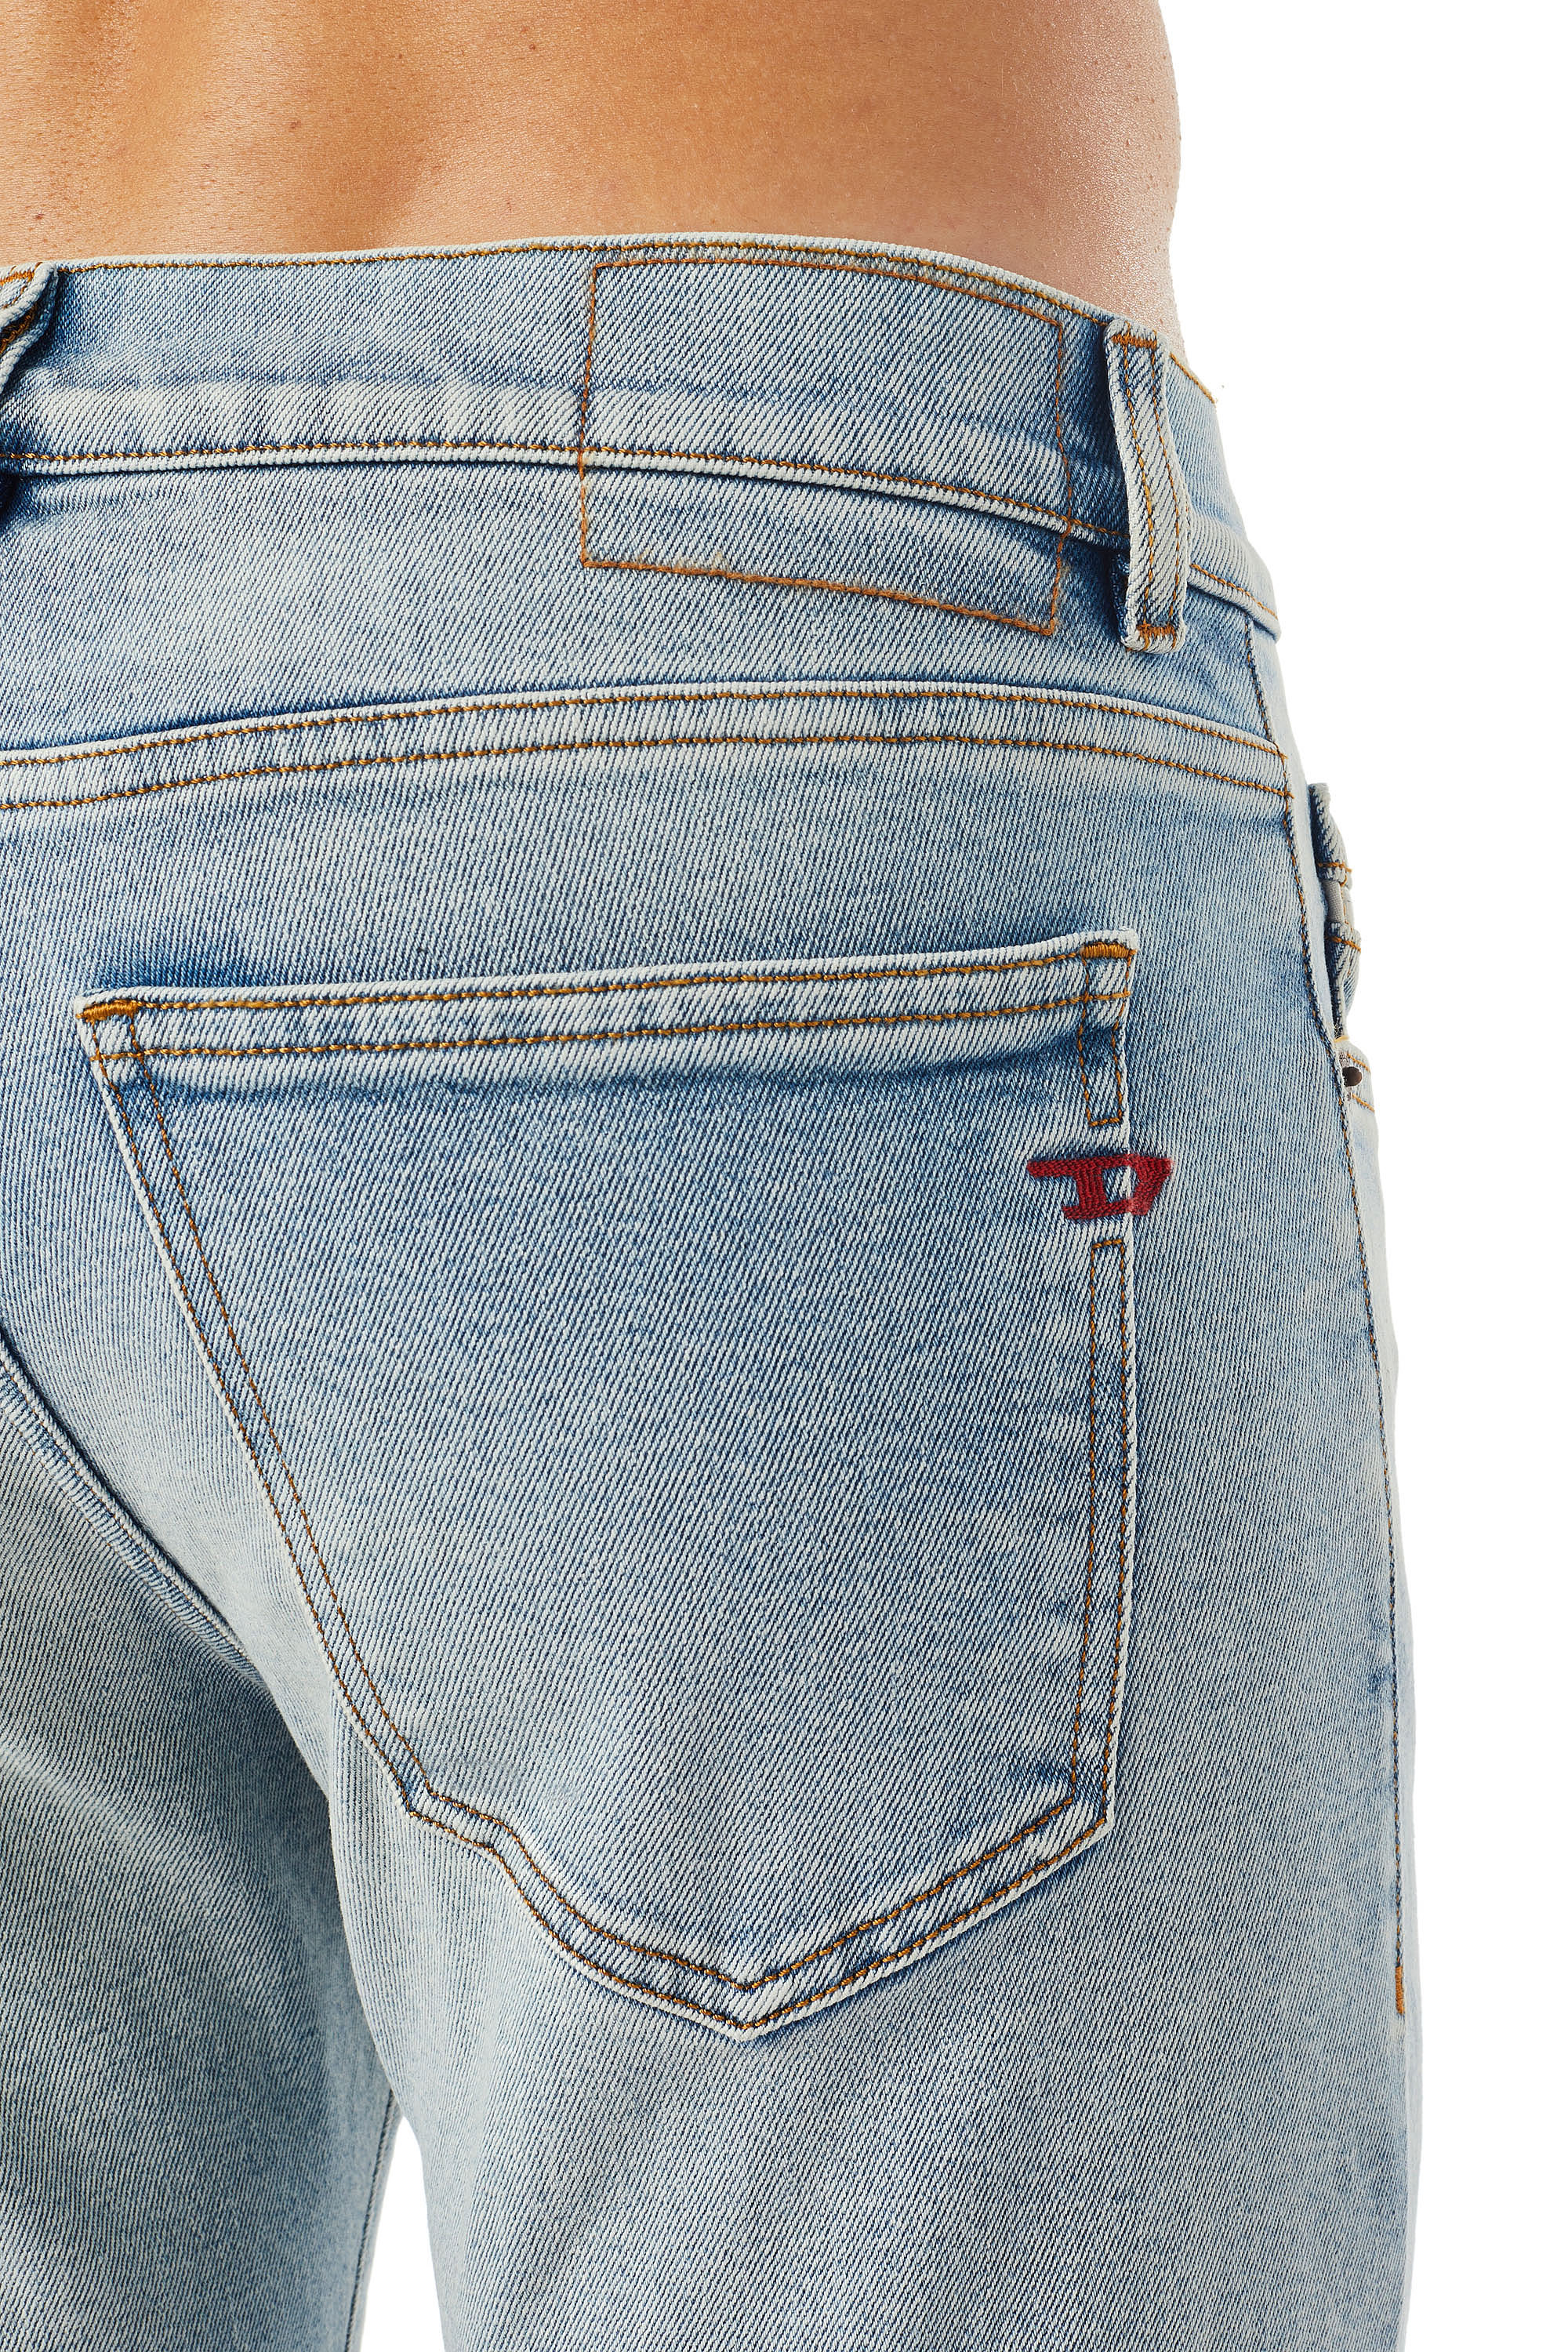 Diesel - Slim Jeans 2019 D-Strukt 09C08, Light Blue - Image 4